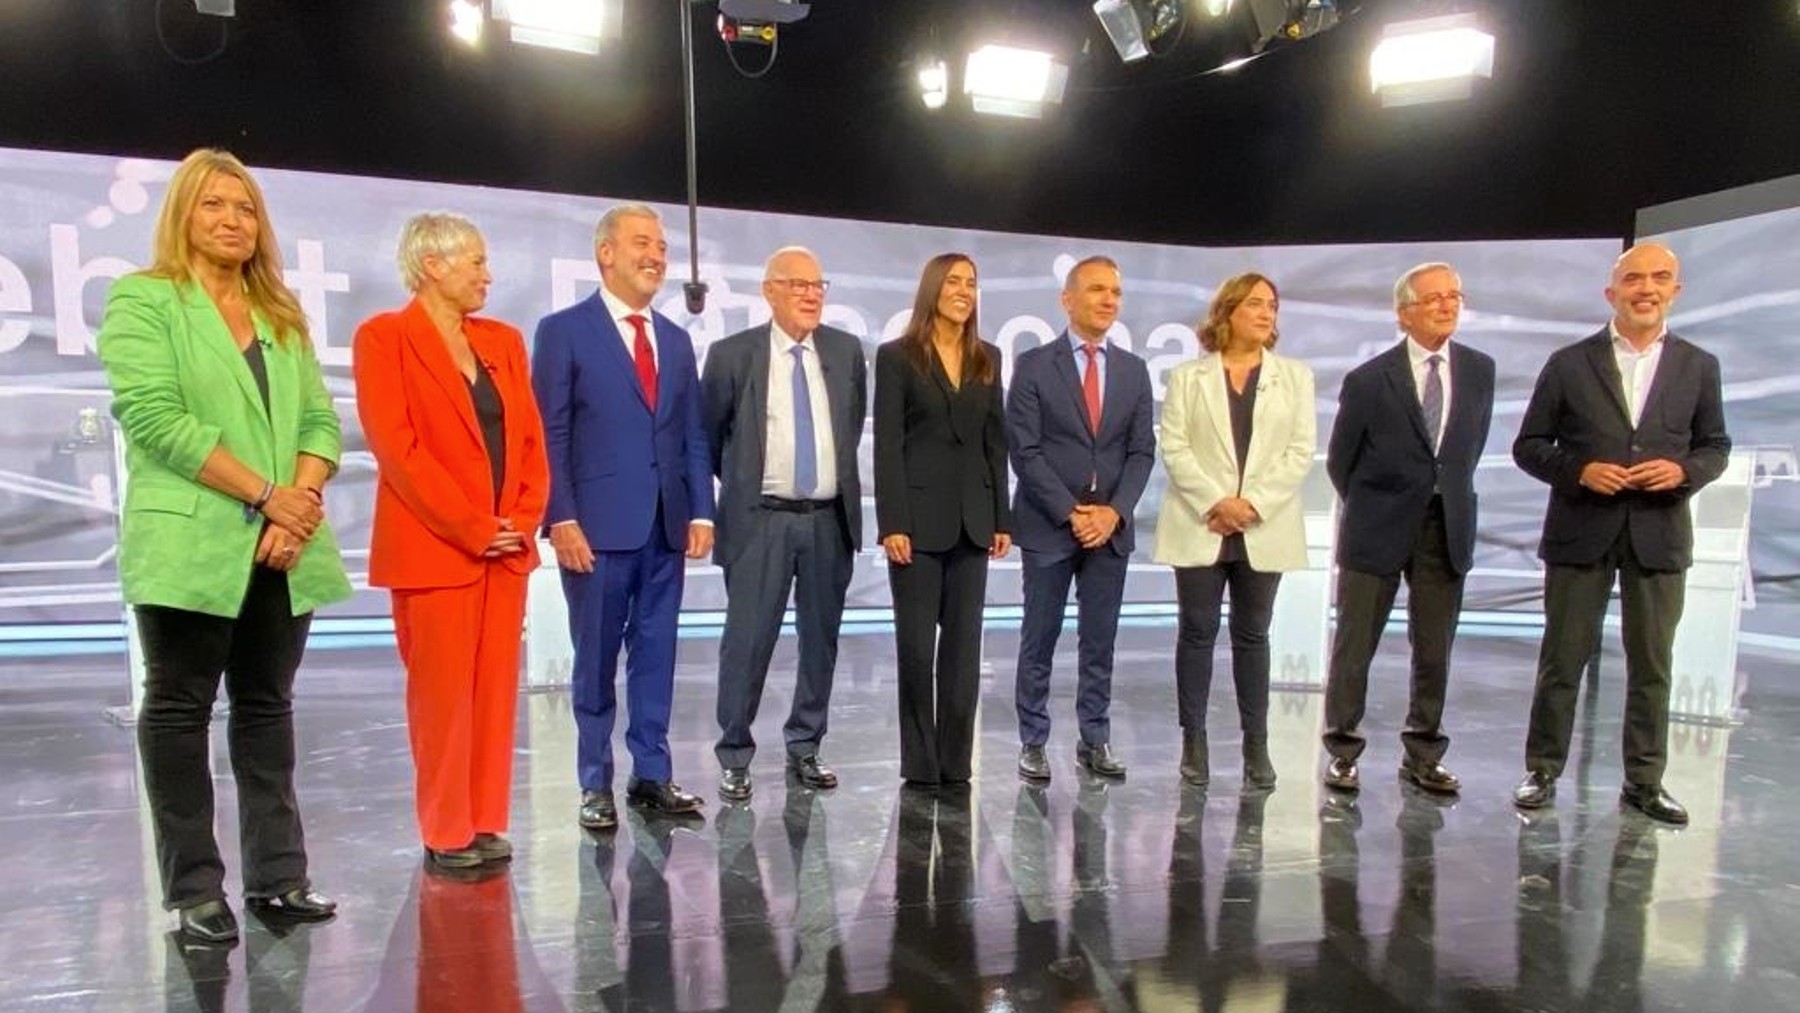 Los candidatos a la Alcaldía de Barcelona. (Foto: EP)